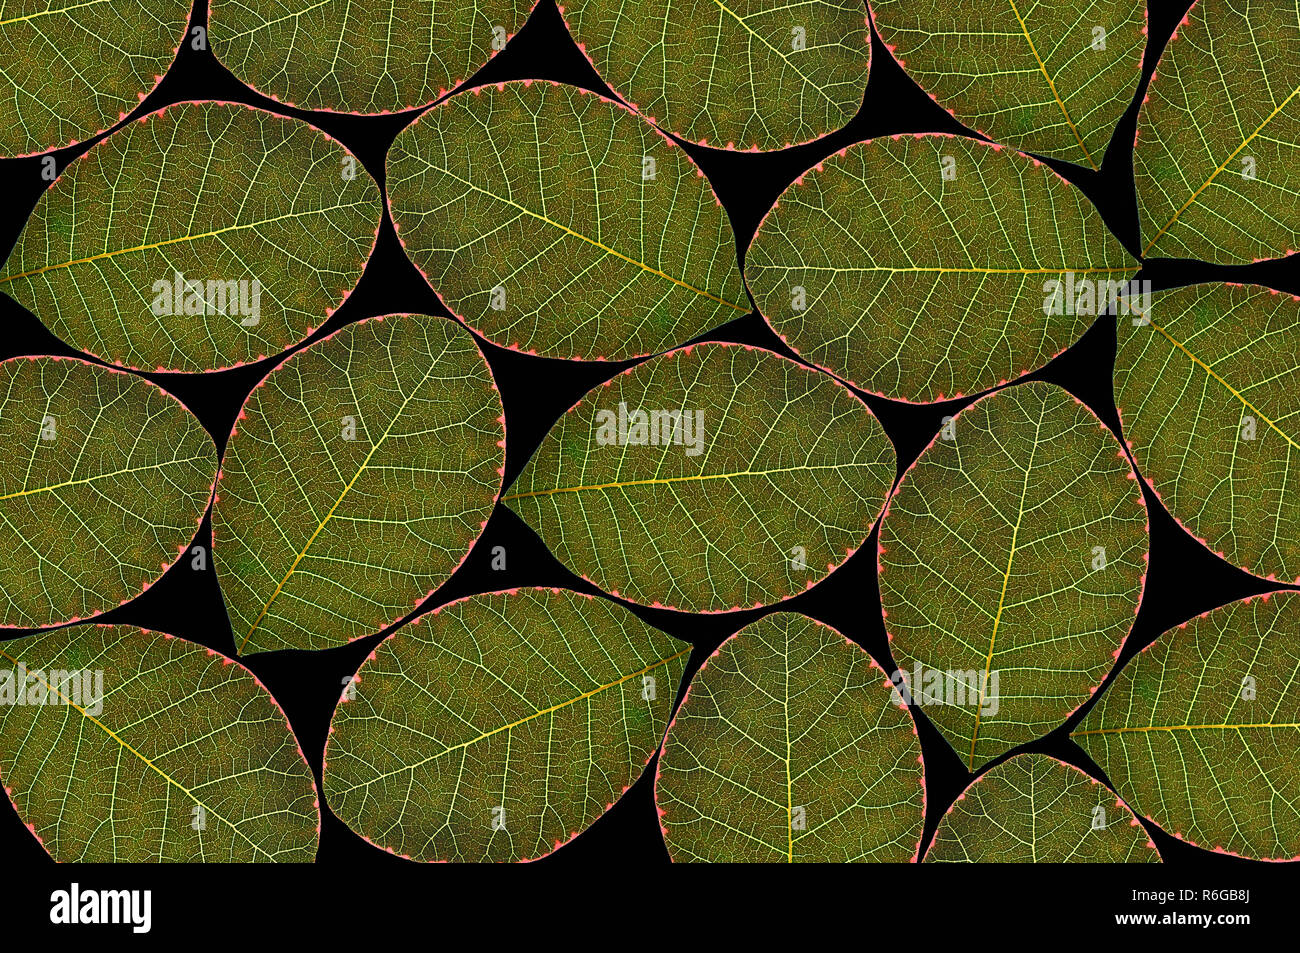 Les feuilles des plantes en lumière transmise Banque D'Images